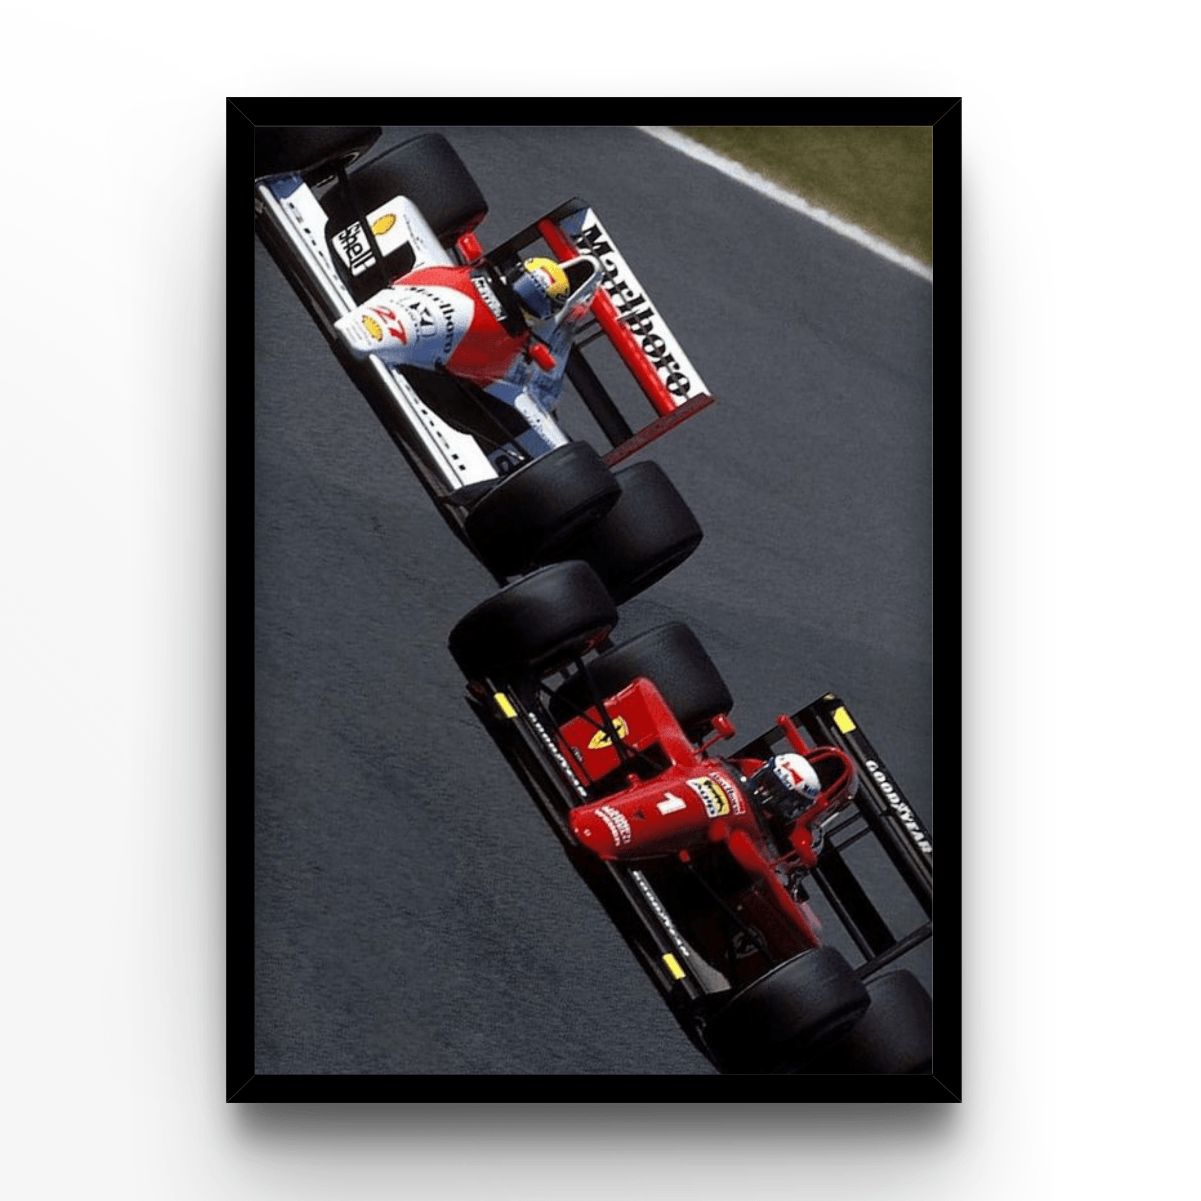 Prost VS Senna - A4, A3, A2 Posters Base - Poster Print Shop / Art Prints / PostersBase